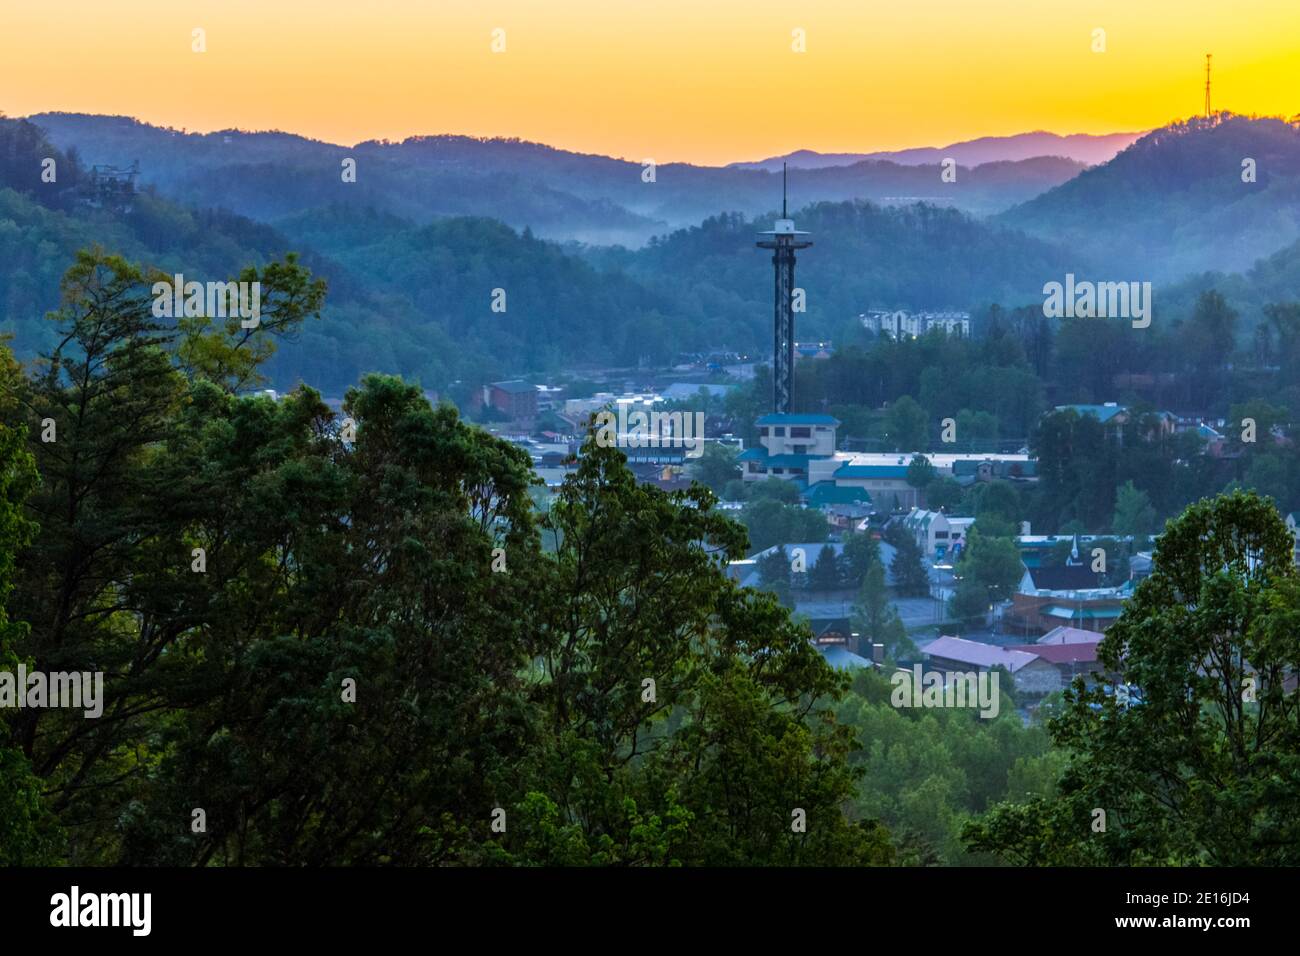 Gatlinburg Tennessee Sonnenaufgang. Skyline der Stadt des kleinen Resorts Gatlinburg, umgeben von den Gipfeln des Great Smoky Mountains National Park. Stockfoto